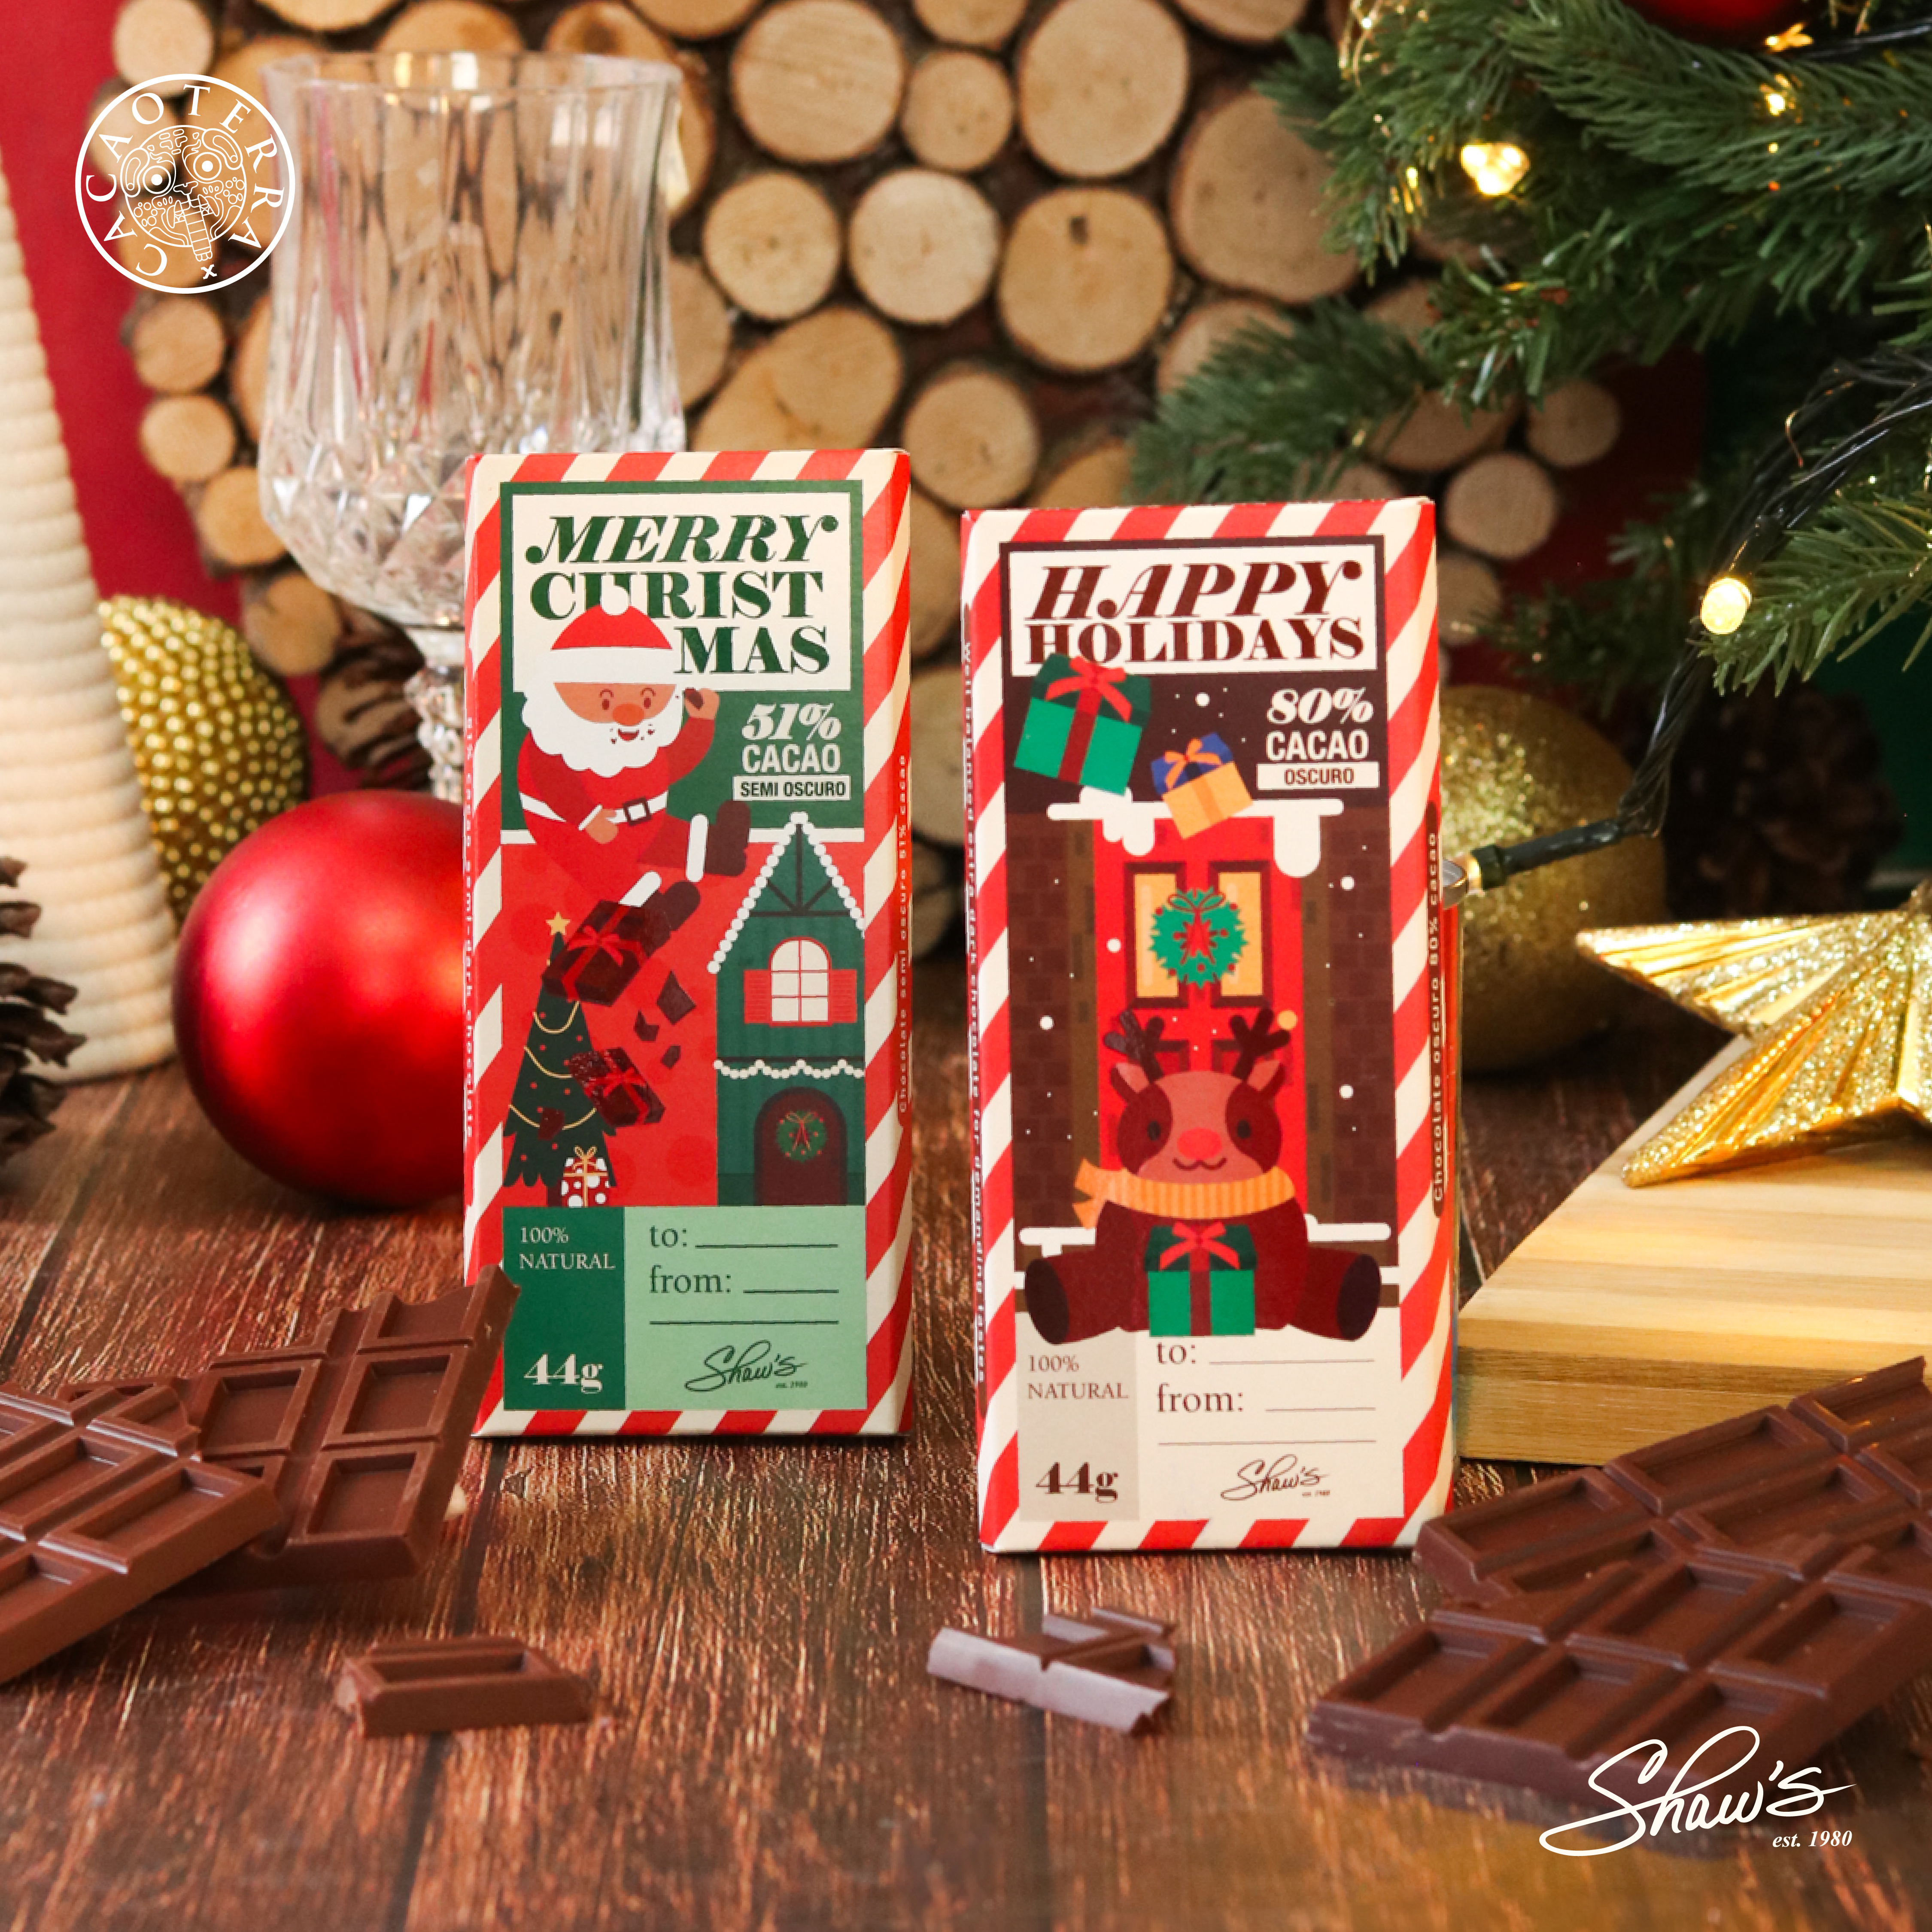 Barras de Chocolate – Christmas